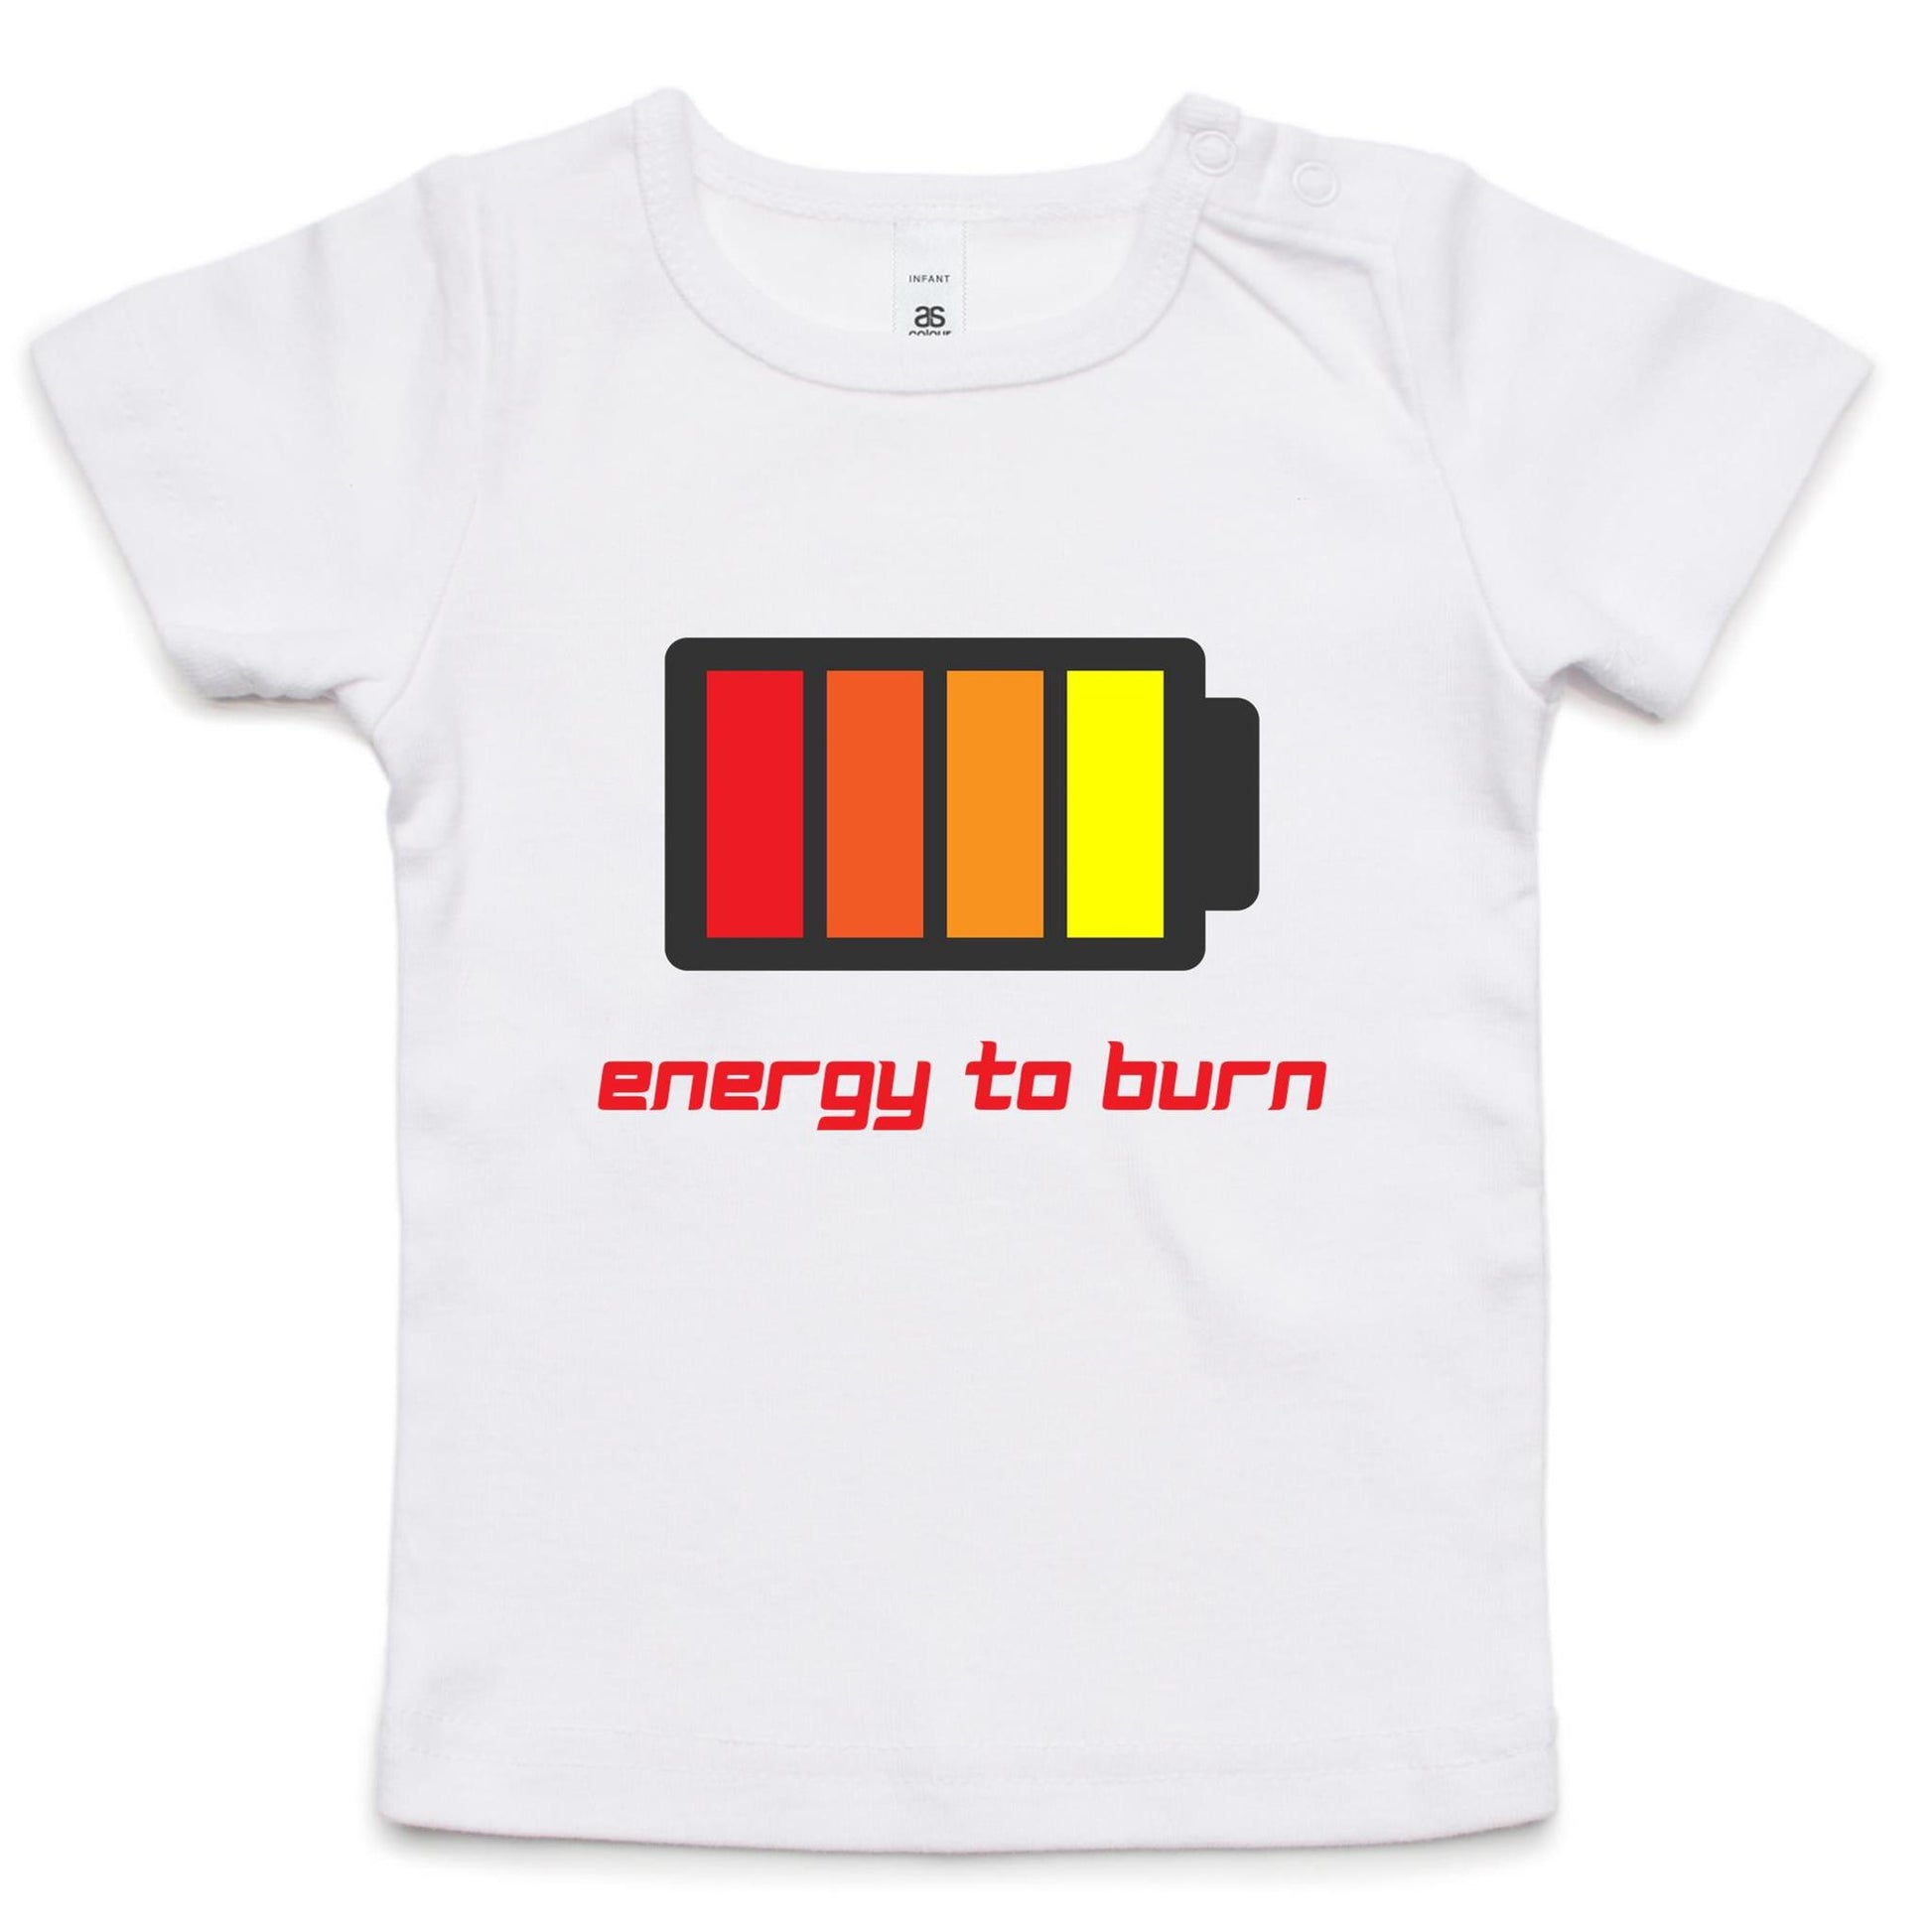 Energy To Burn - Baby T-shirt White Baby T-shirt kids